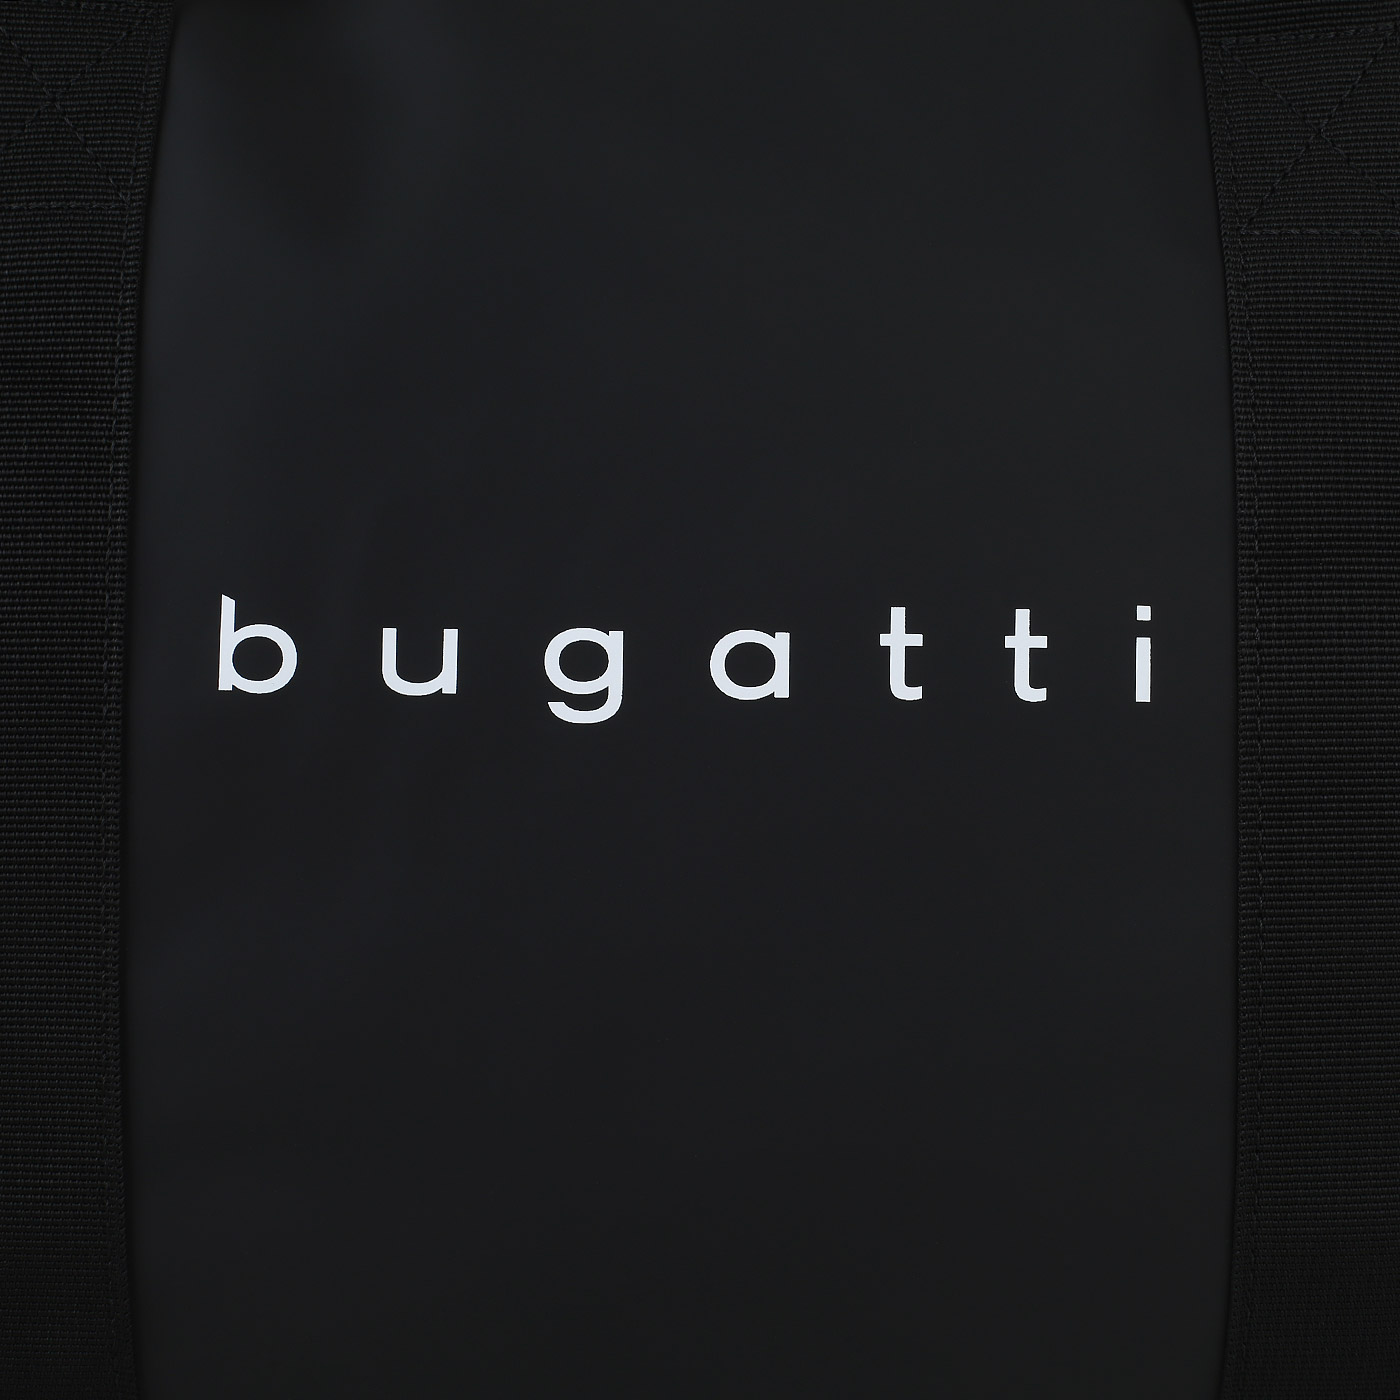 Дорожная сумка Bugatti Rina